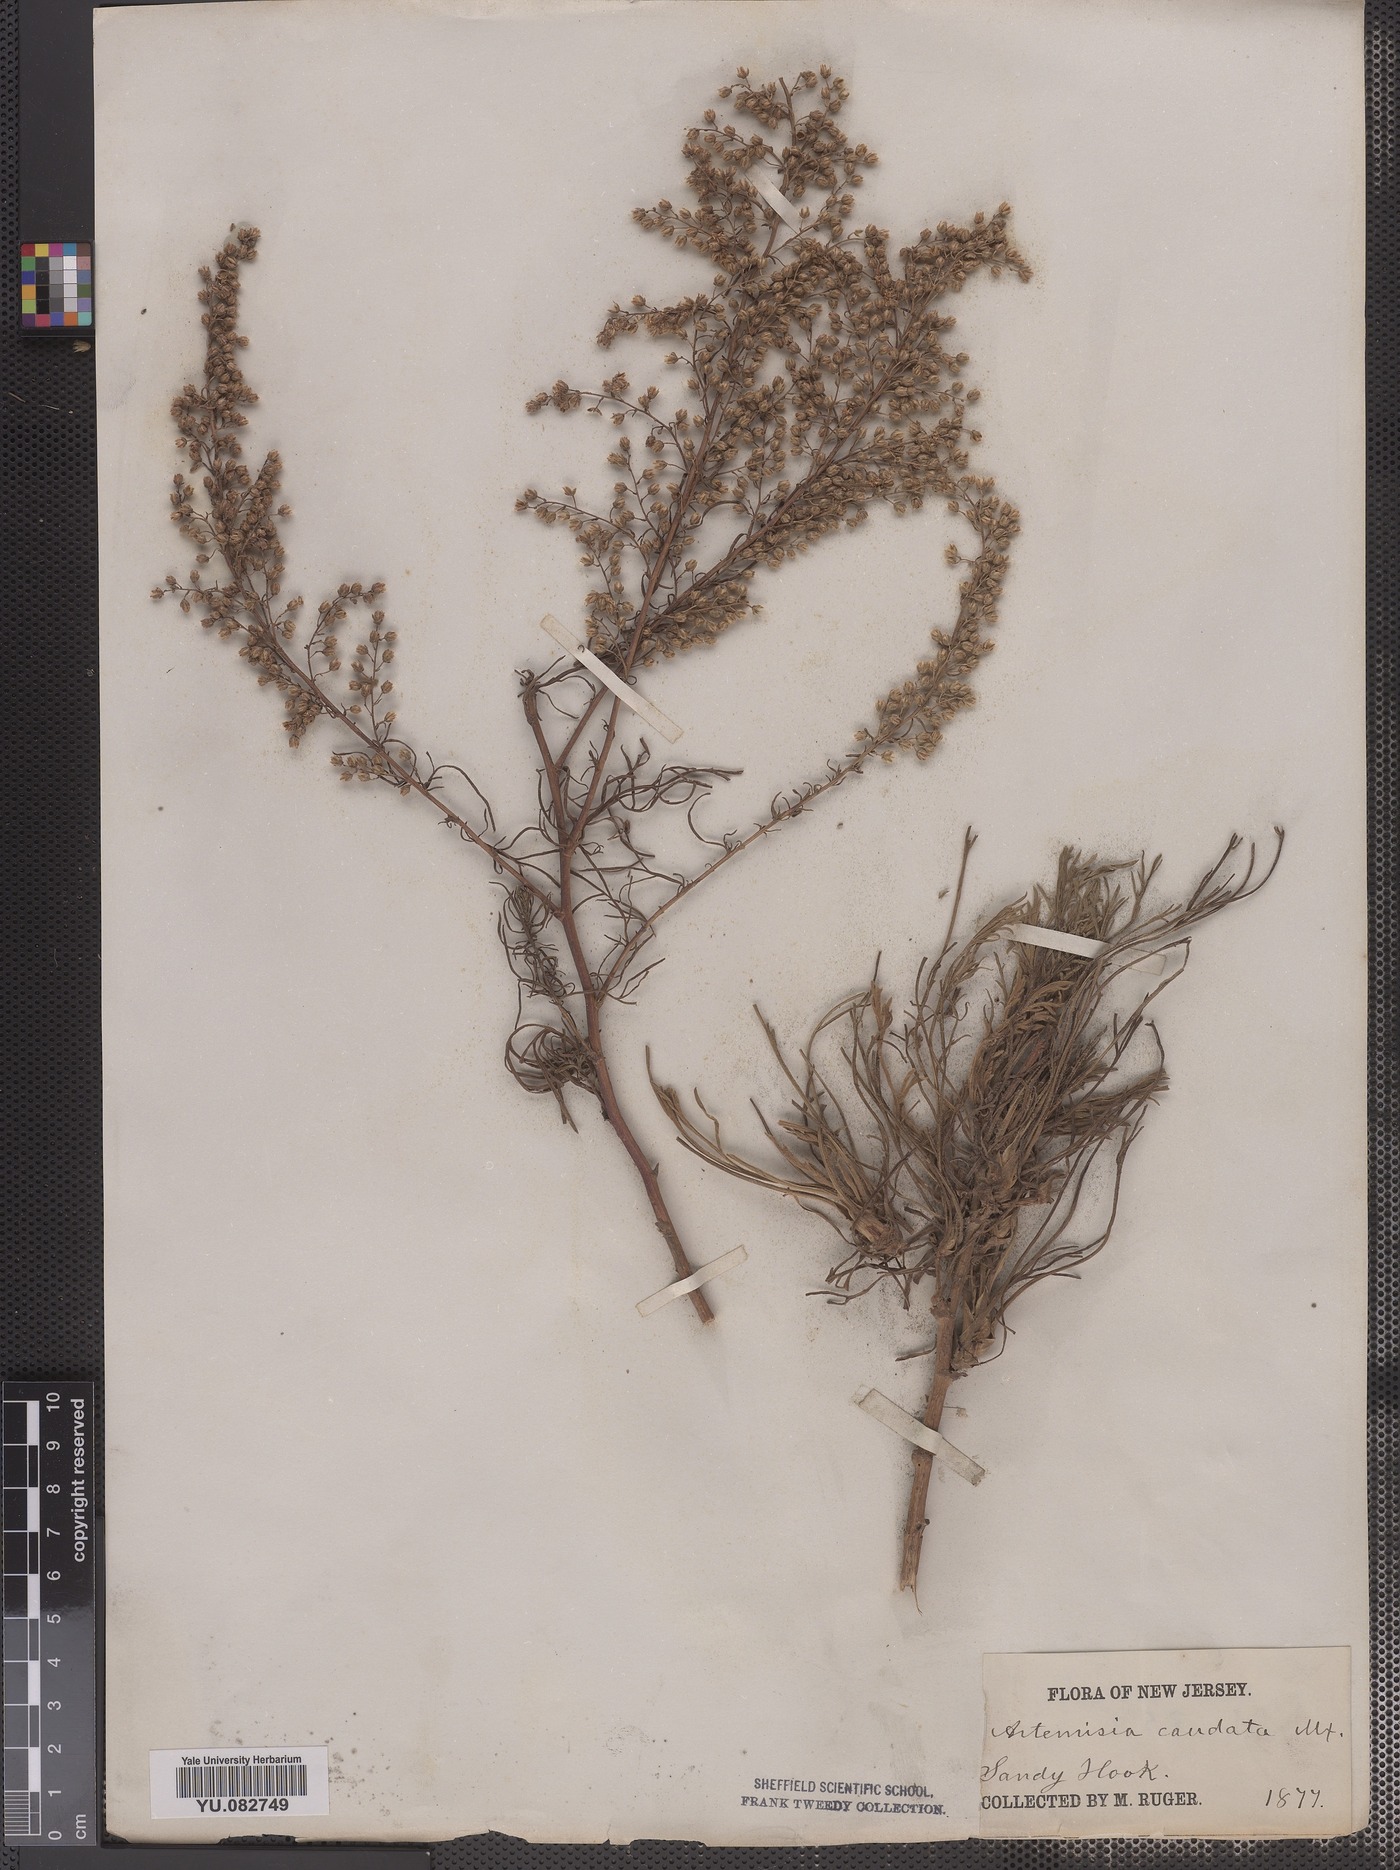 Artemisia campestris ssp. caudata image